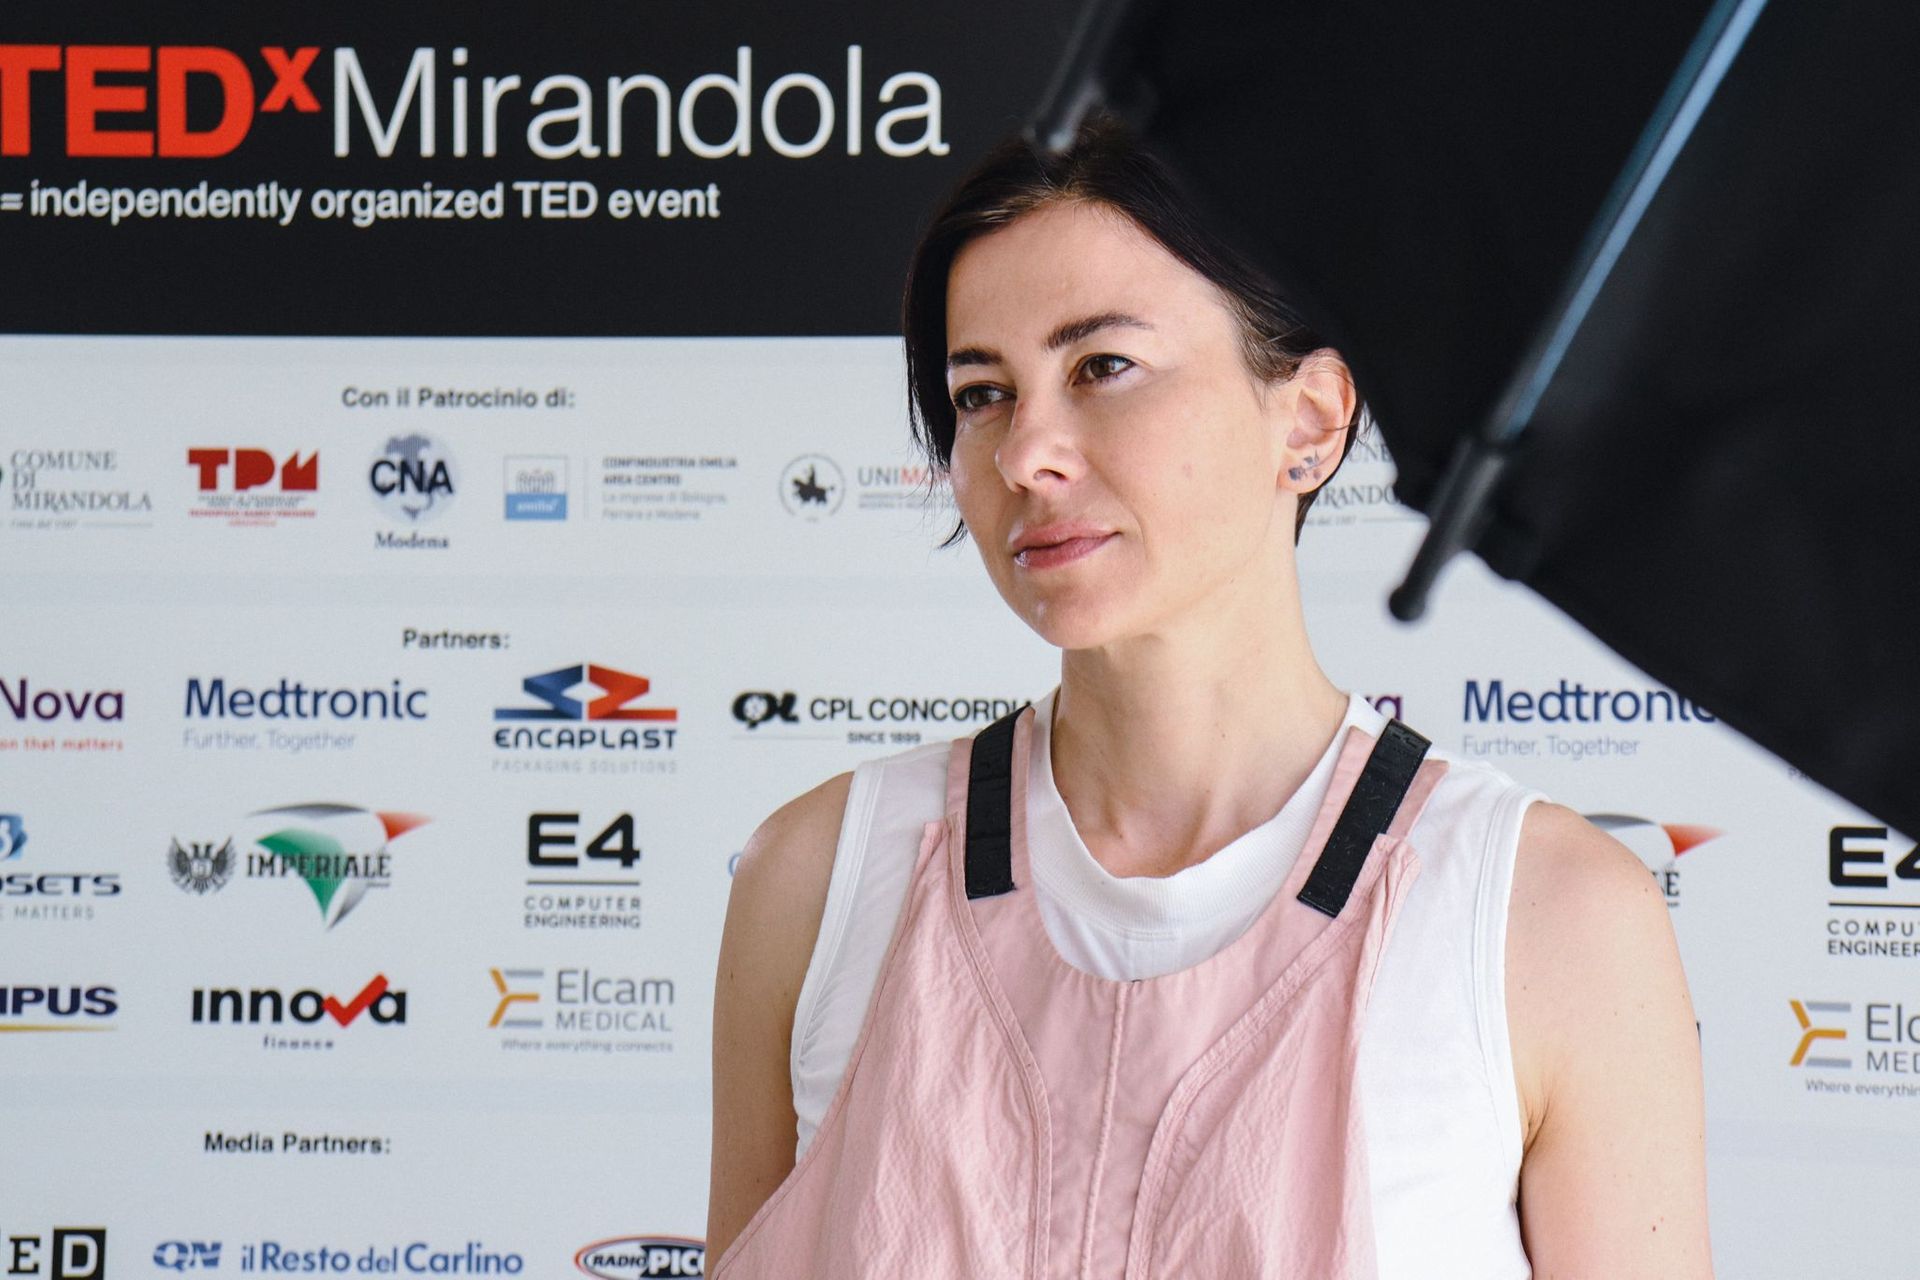 Francesca Veronesi ผู้ก่อตั้ง Maverx Foundation เป็นลูกสาวของ Mario ซึ่งเป็นผู้บุกเบิกเขตชีวการแพทย์ในปี 1962 เธอเป็นผู้บรรยายใน TEDx Mirandola รุ่นแรก